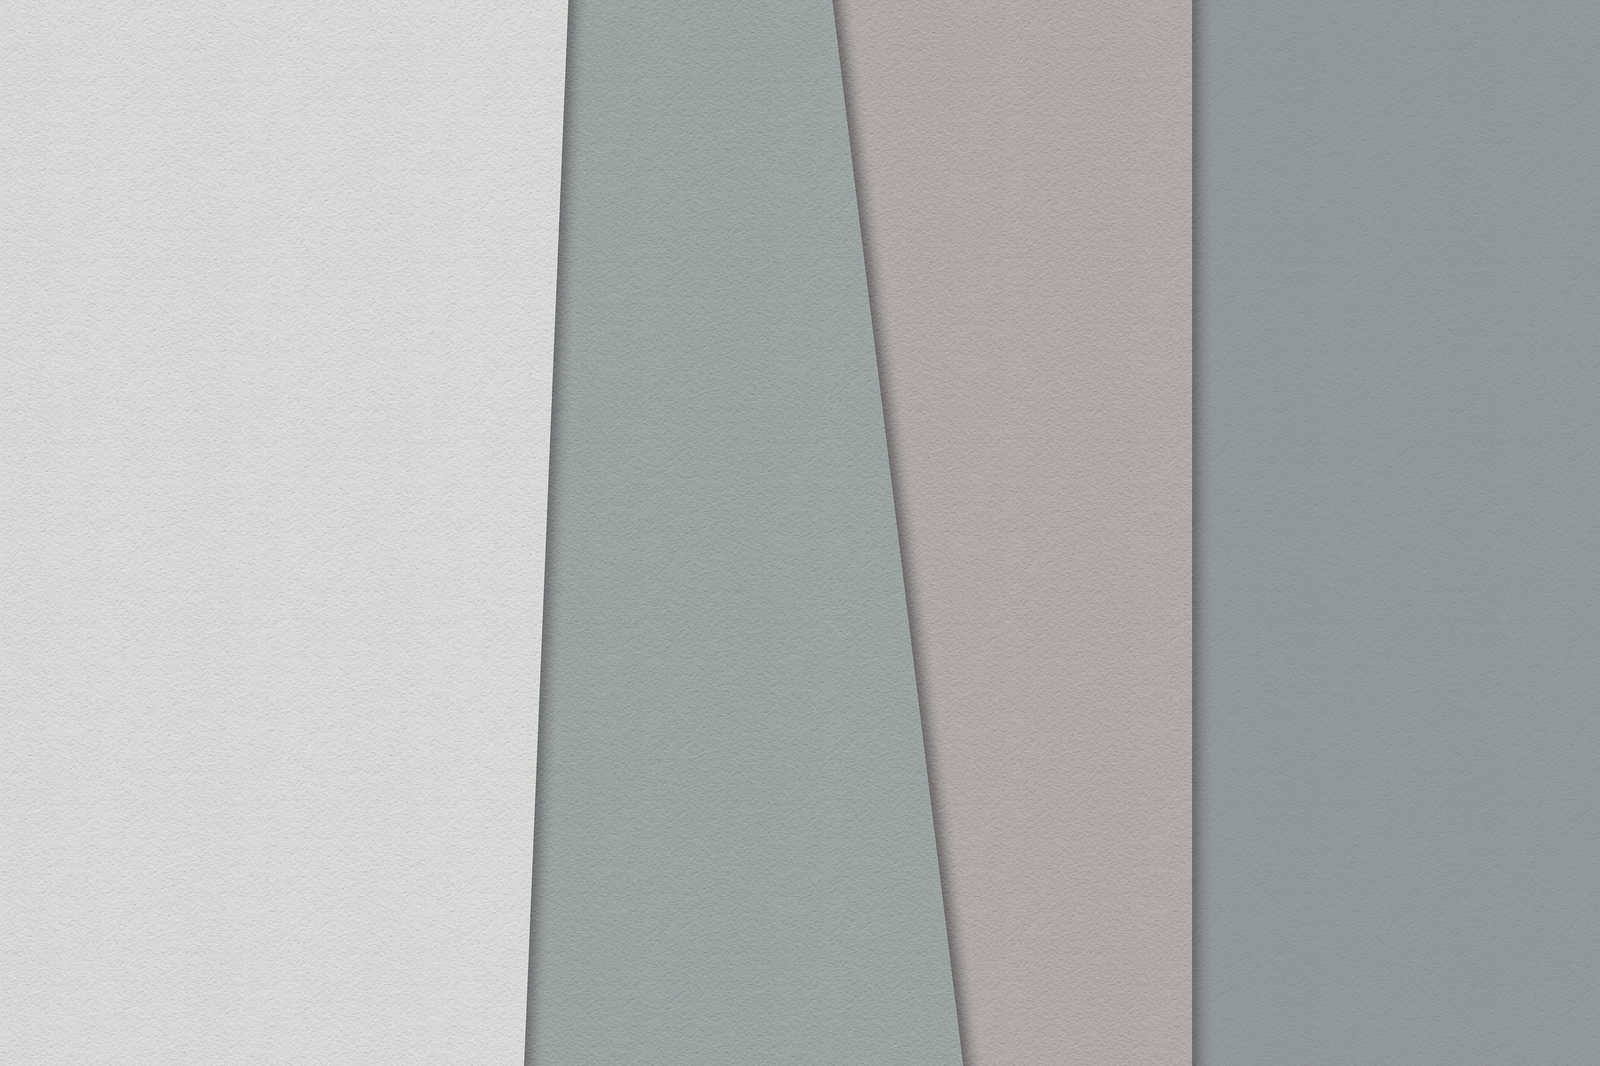             Layered paper 1 - Grafisches Leinwandbild mit Farbflächen in Büttenpapier Struktur – 1,20 m x 0,80 m
        